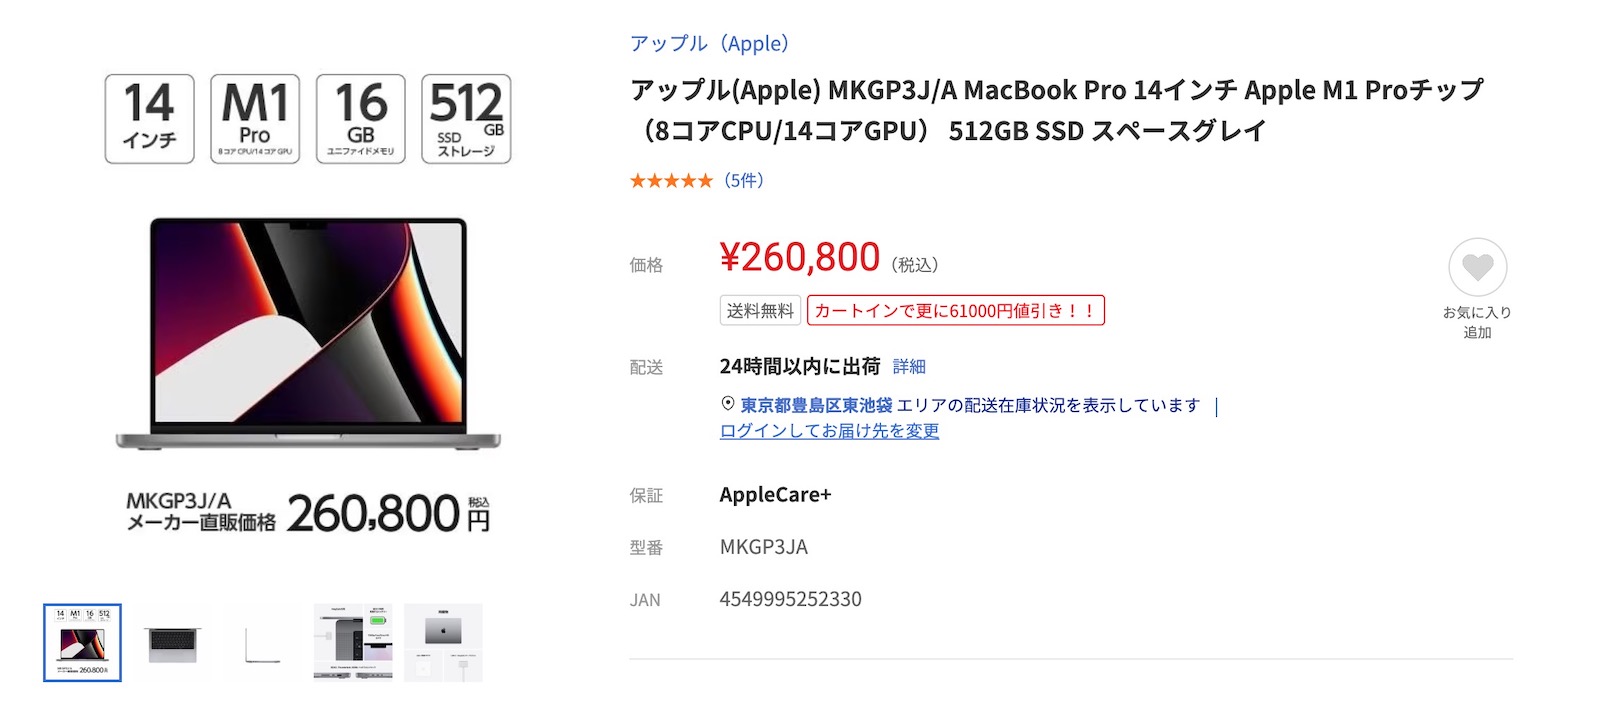 yamada-denki-web-macbookpro-sale.jpg